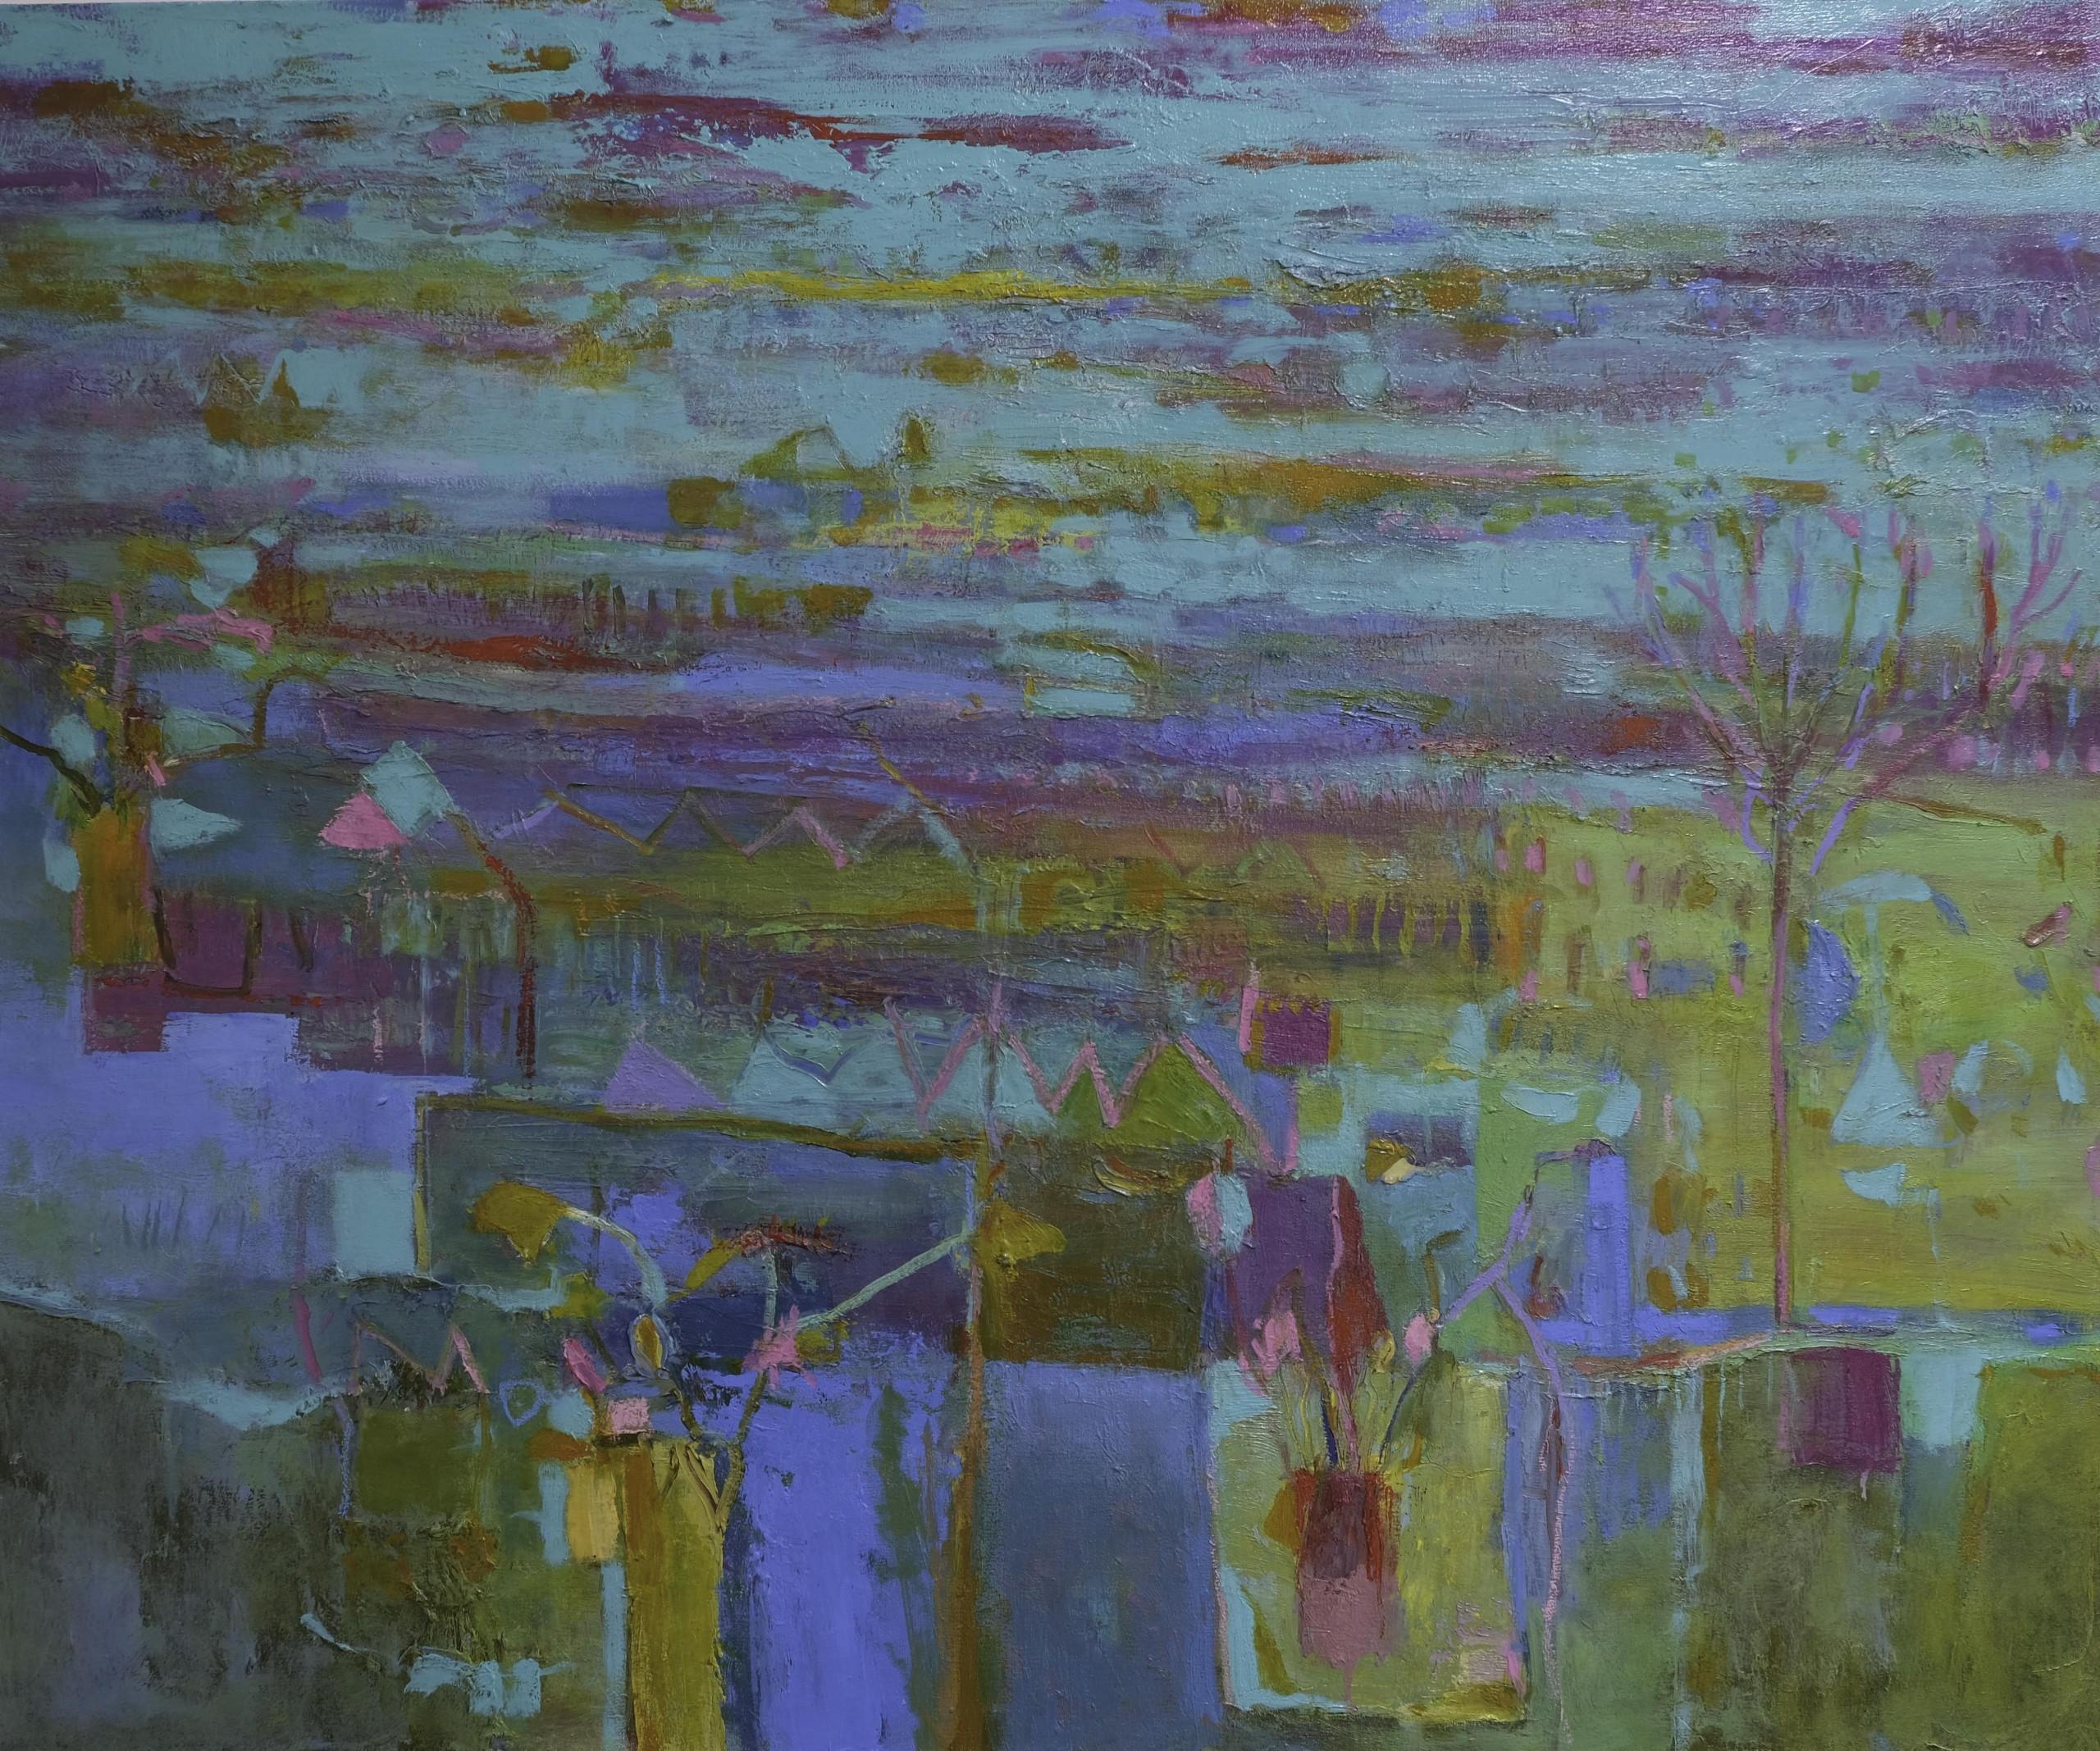 Landscape Painting Teresa Pemberton - Jardin de mer, peinture abstraite originale de paysage marin Peinture d'art contemporain